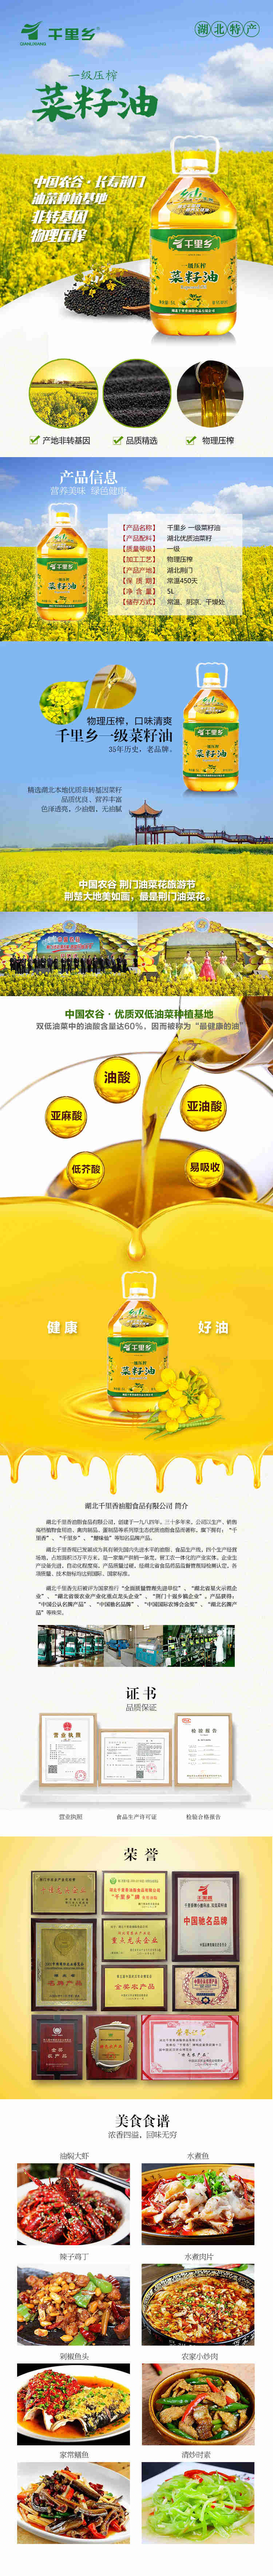 【荆门】千里乡一级压榨菜籽油5L非转基因健康营养好食用油